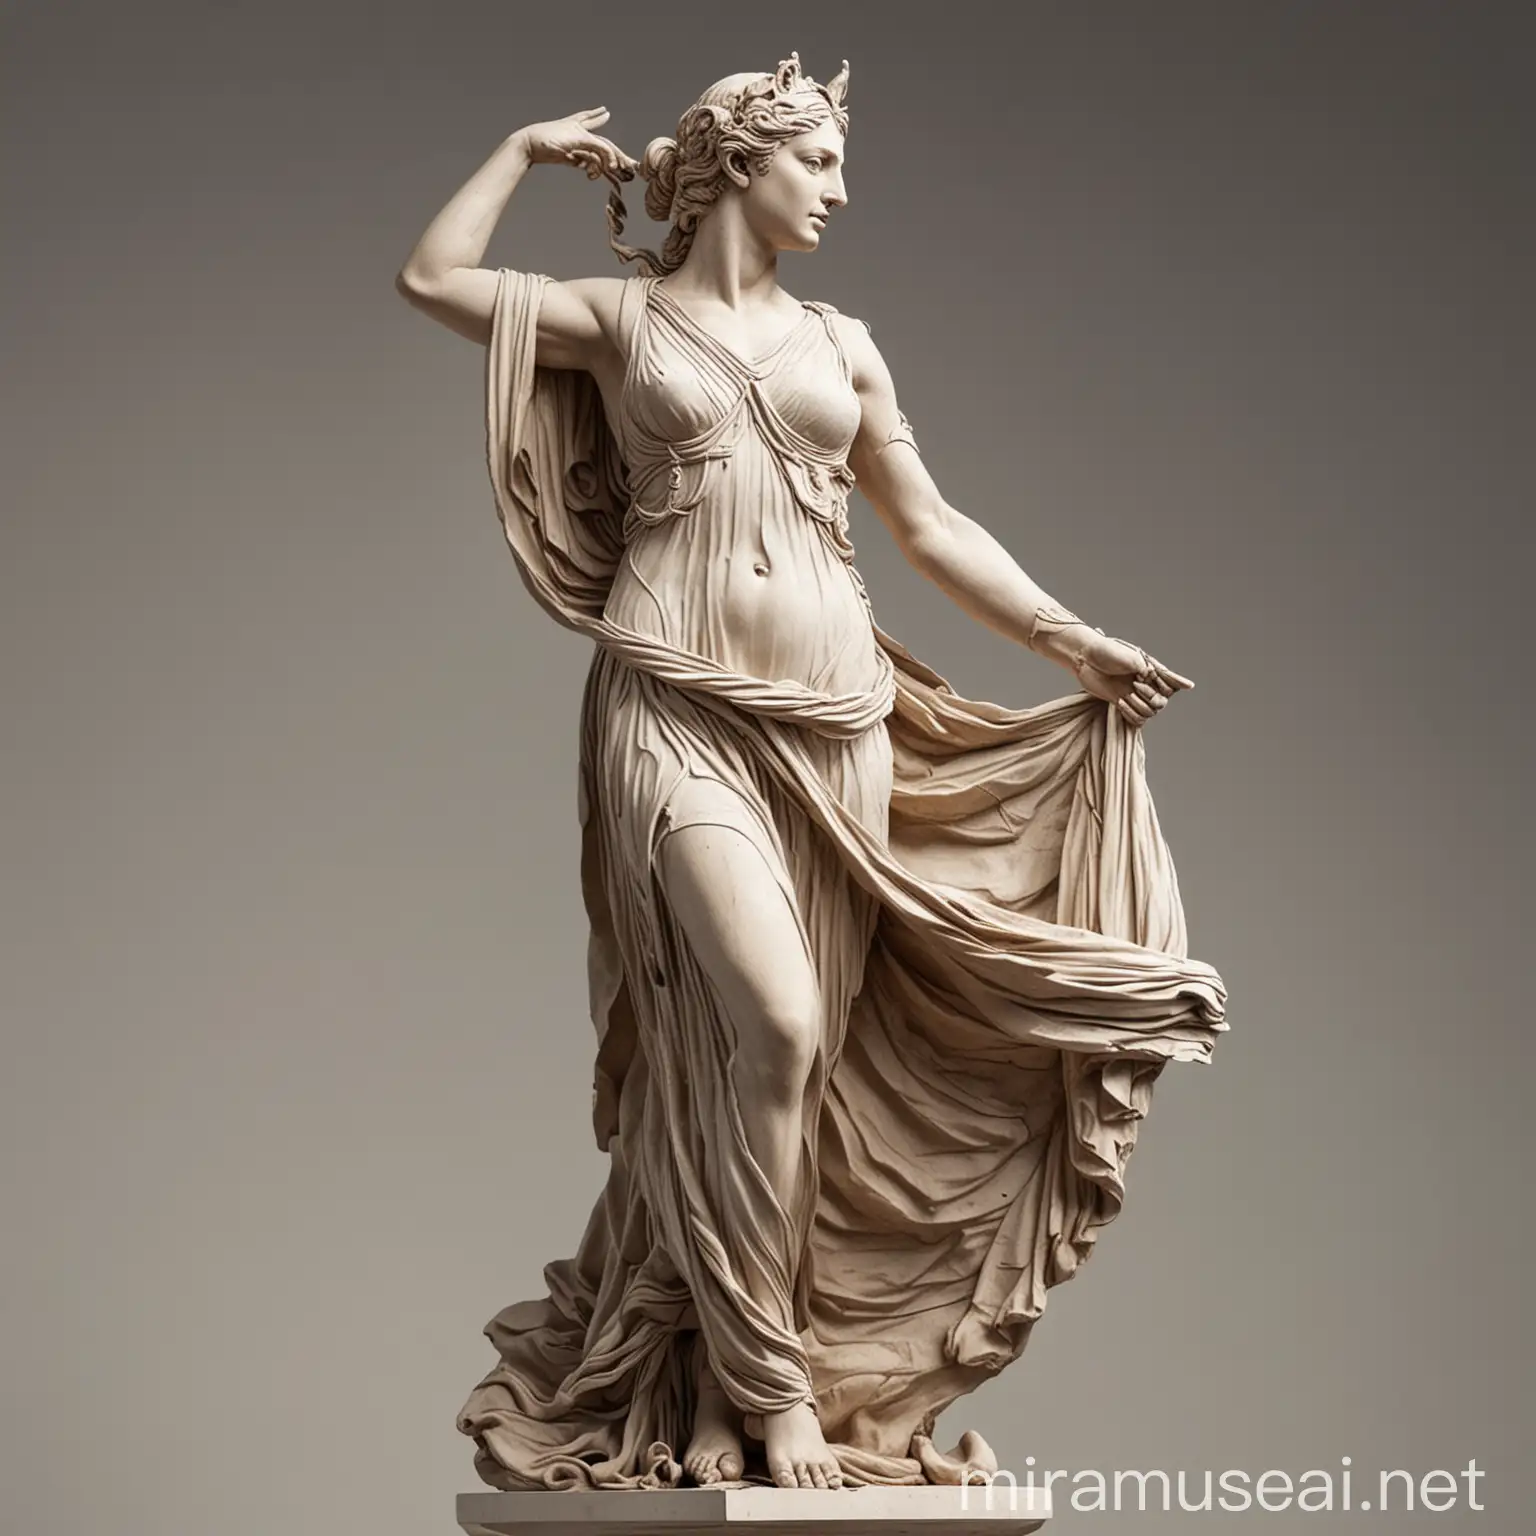 Greek goddess sculpture type making an epic pose